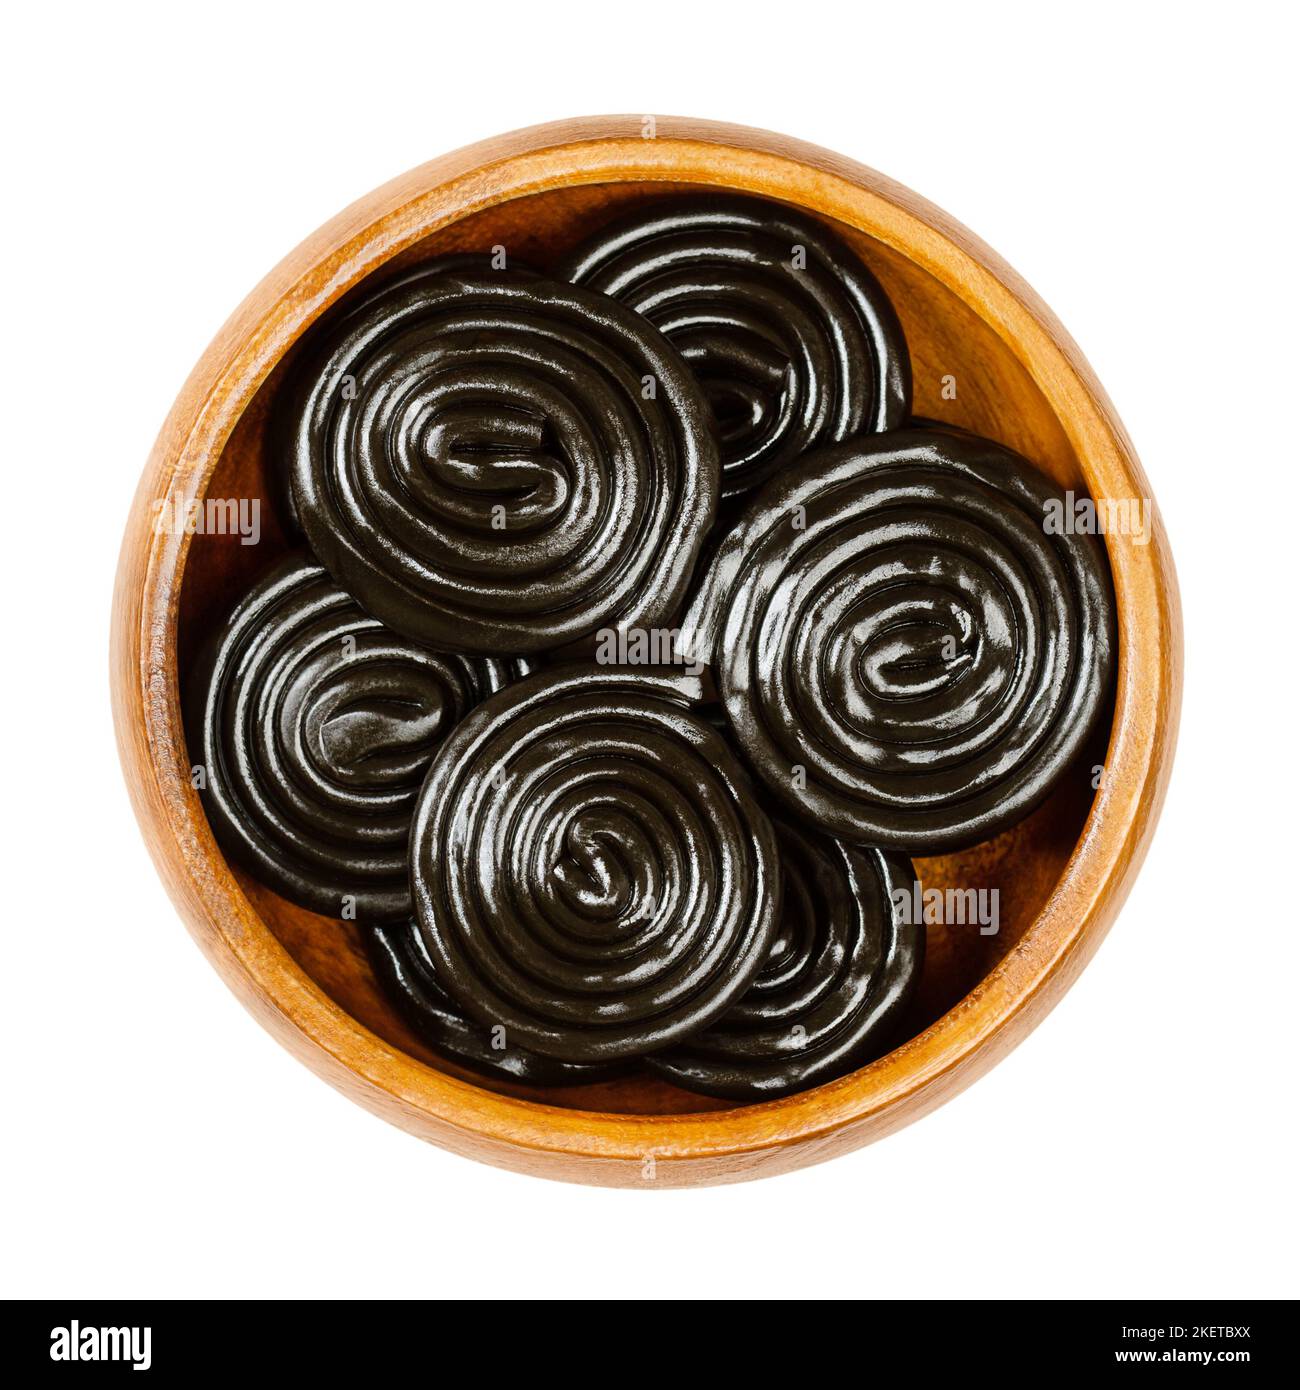 Roues de réglisse, dans un bol en bois. La réglisse, est une confestion, habituellement aromatisée et colorée en noir avec l'extrait des racines de la plante de réglisse. Banque D'Images